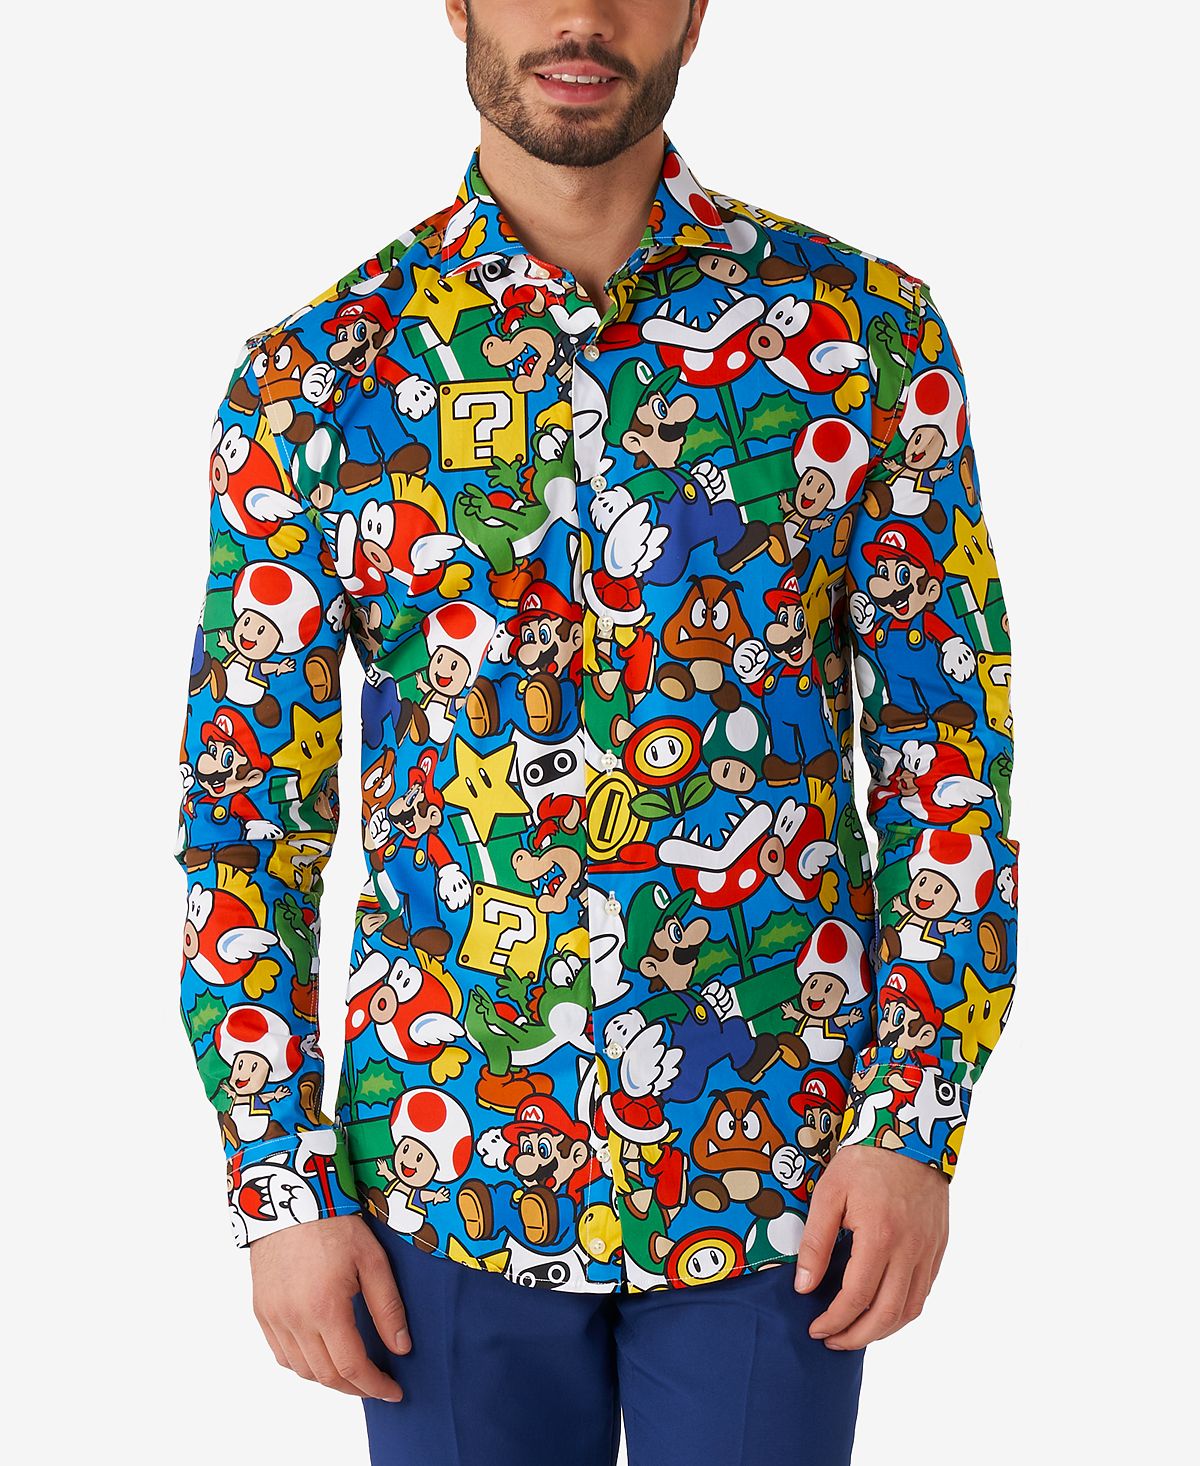 Мужская классическая рубашка nintendo с лицензией super mario OppoSuits игра super mario odyssey nintendo switch русская версия